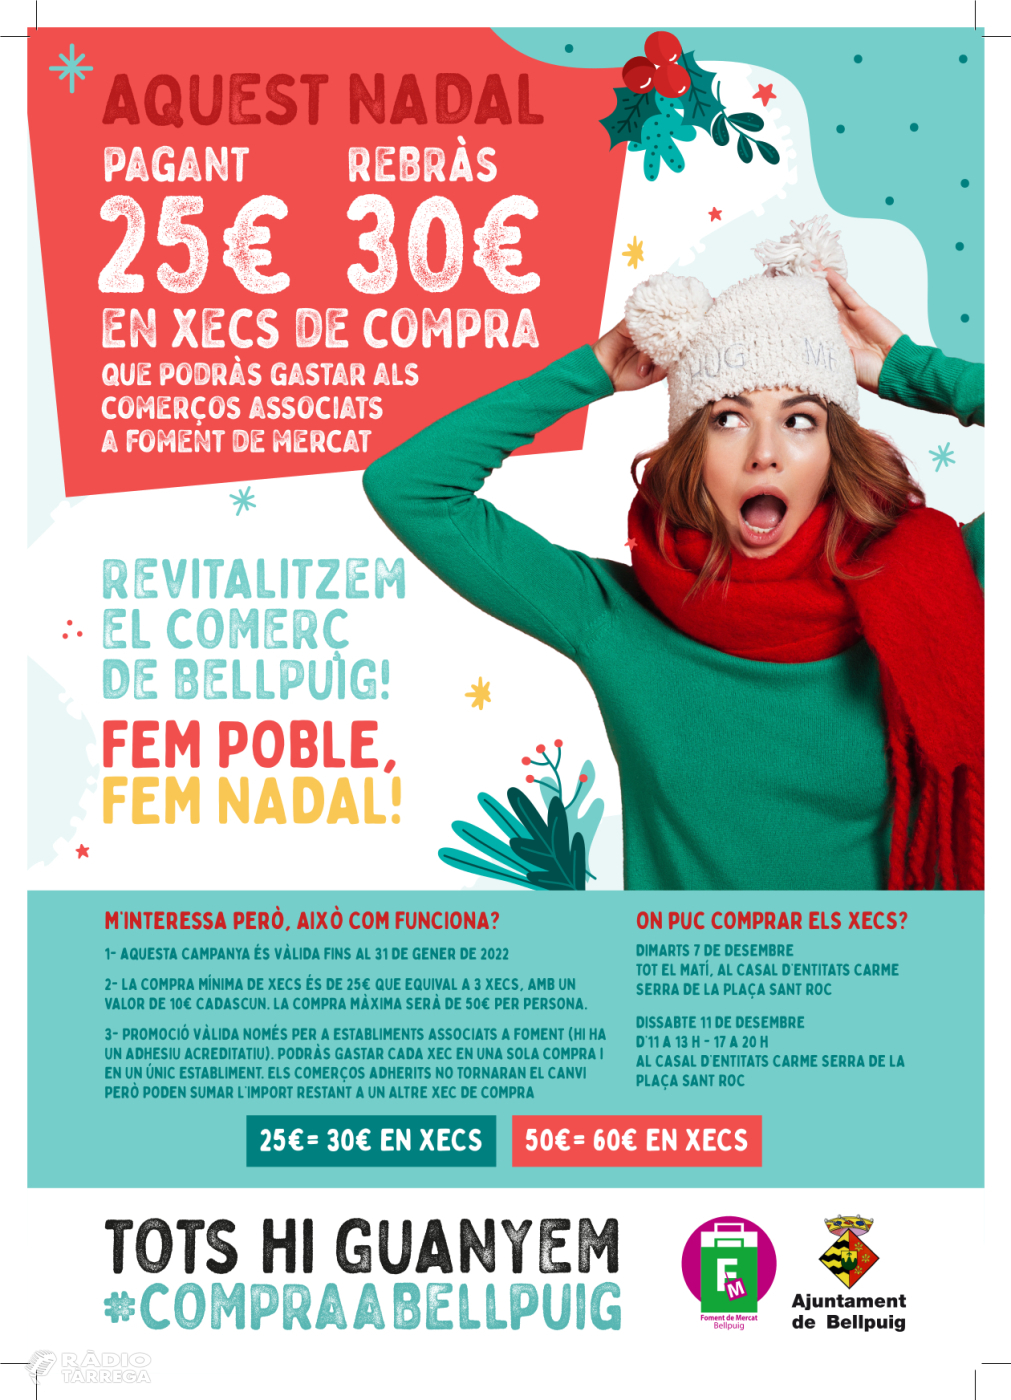 Foment de Mercats de Bellpuig presenta una nova campanya de Nadal